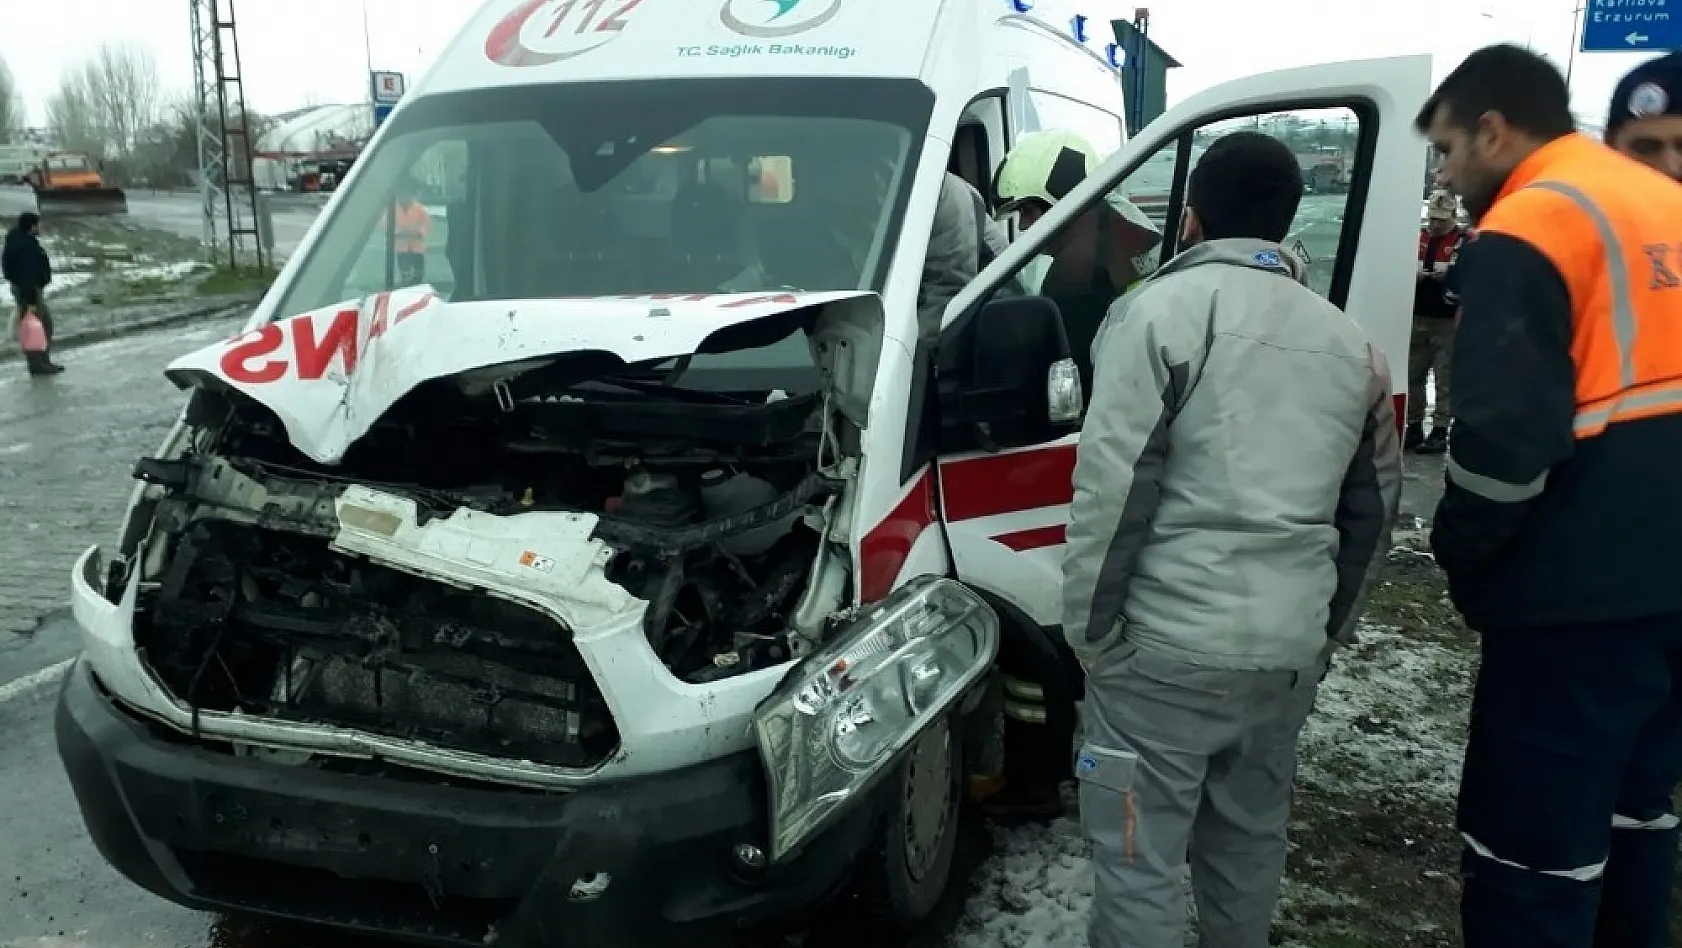 Ambulansla kamyonet çarpıştı: 2 yaralı 